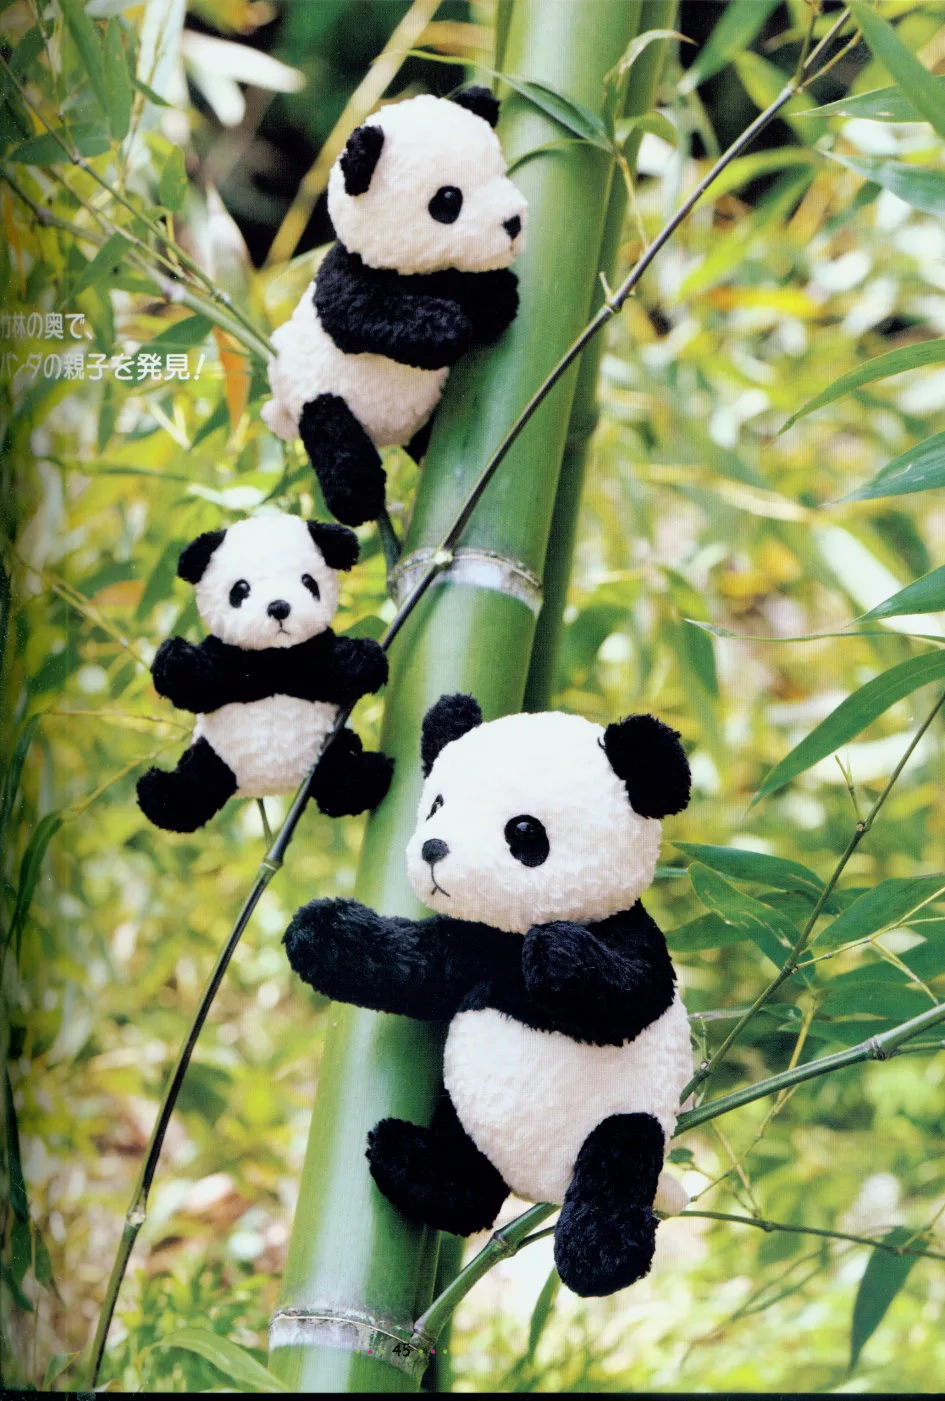 可愛的熊貓家族